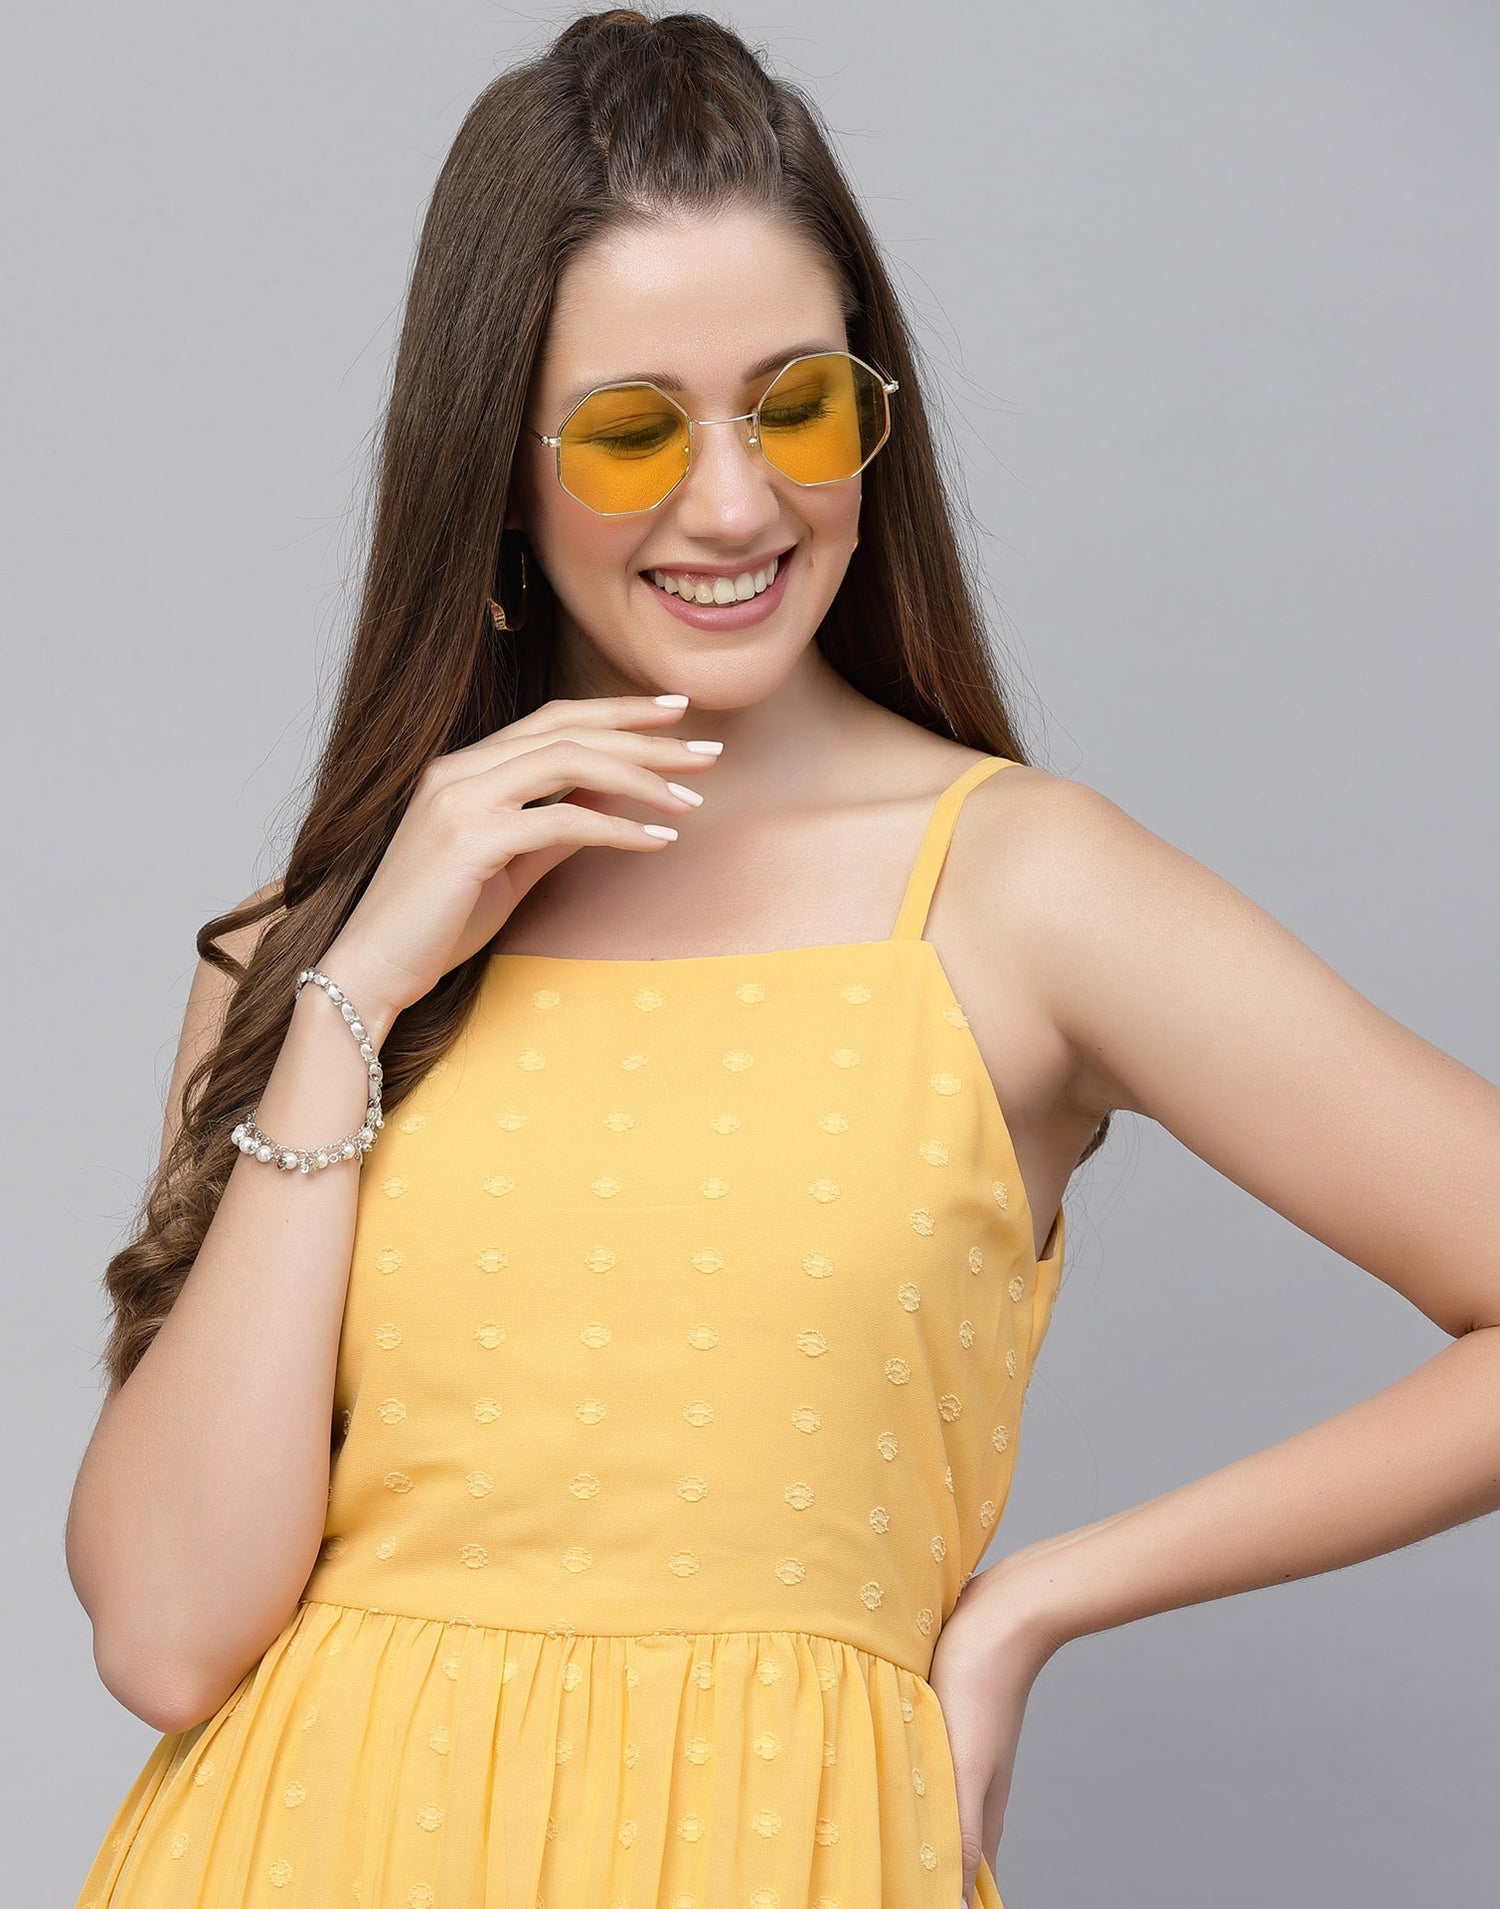 Yellow A-Line Dress | Leemboodi